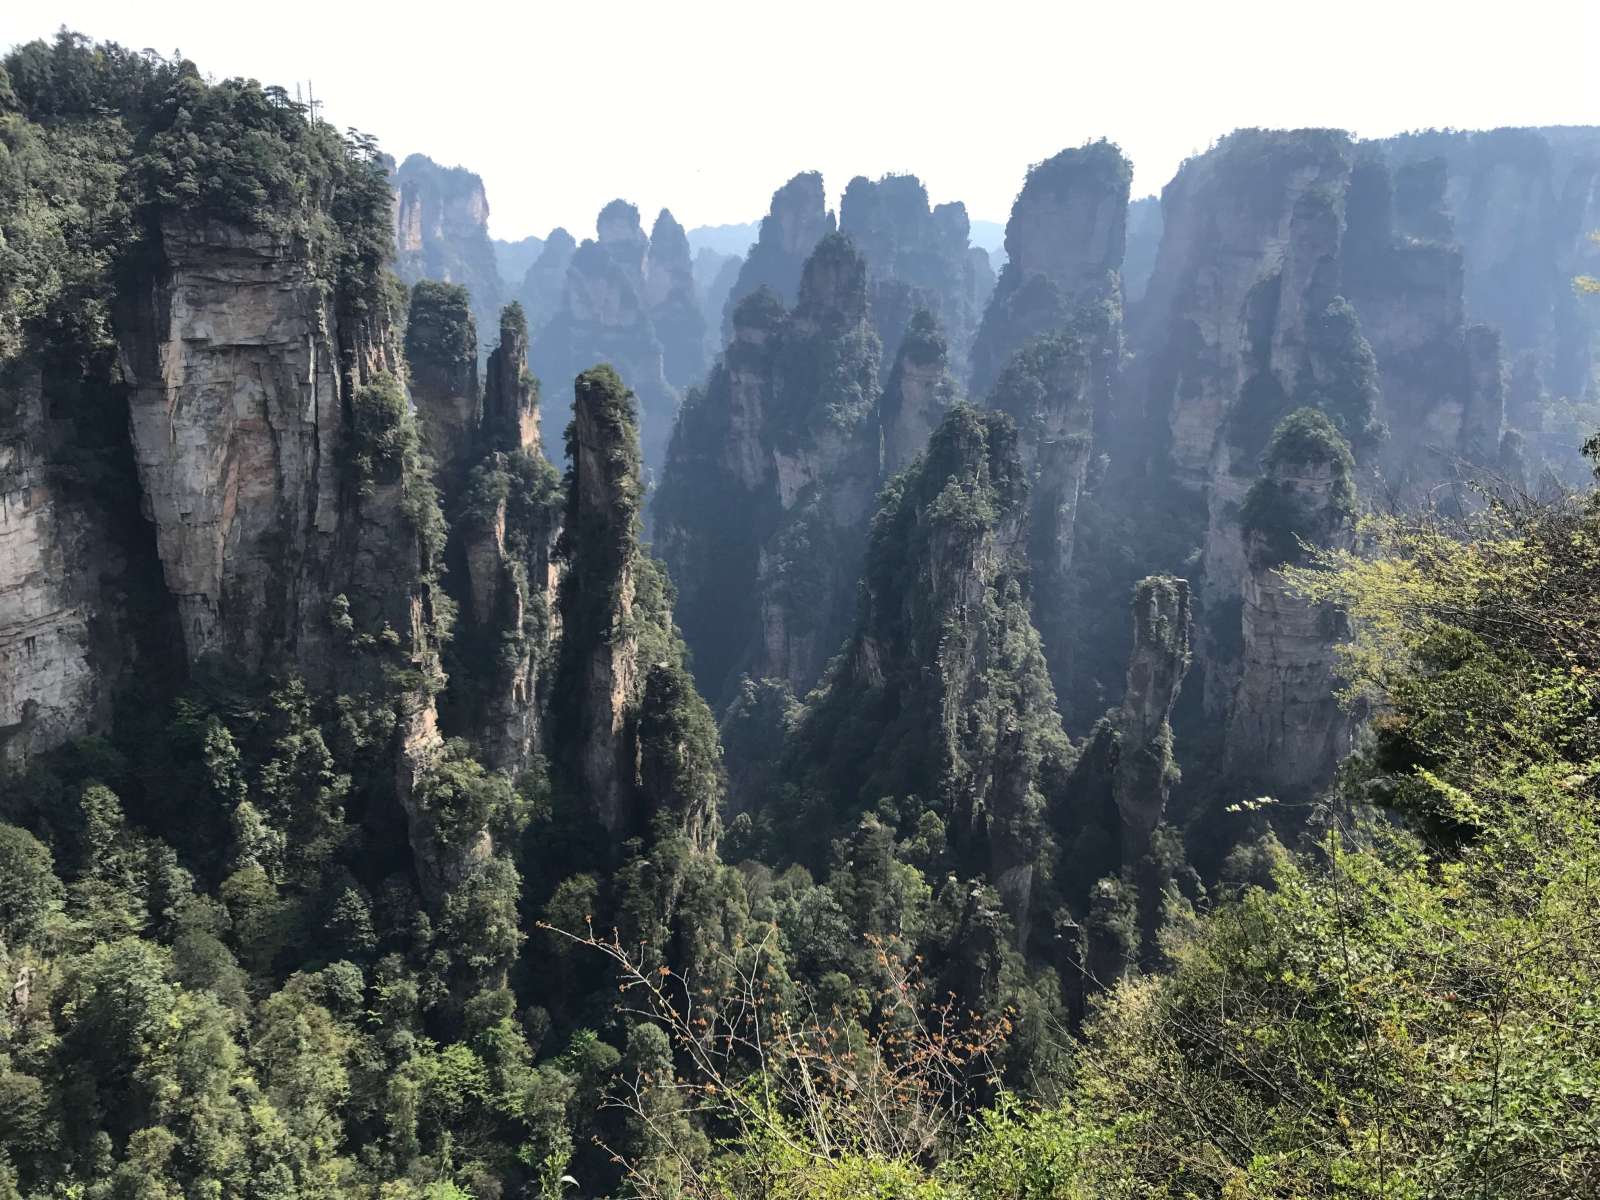 Hiking the stunning Zhangjiajie National Park